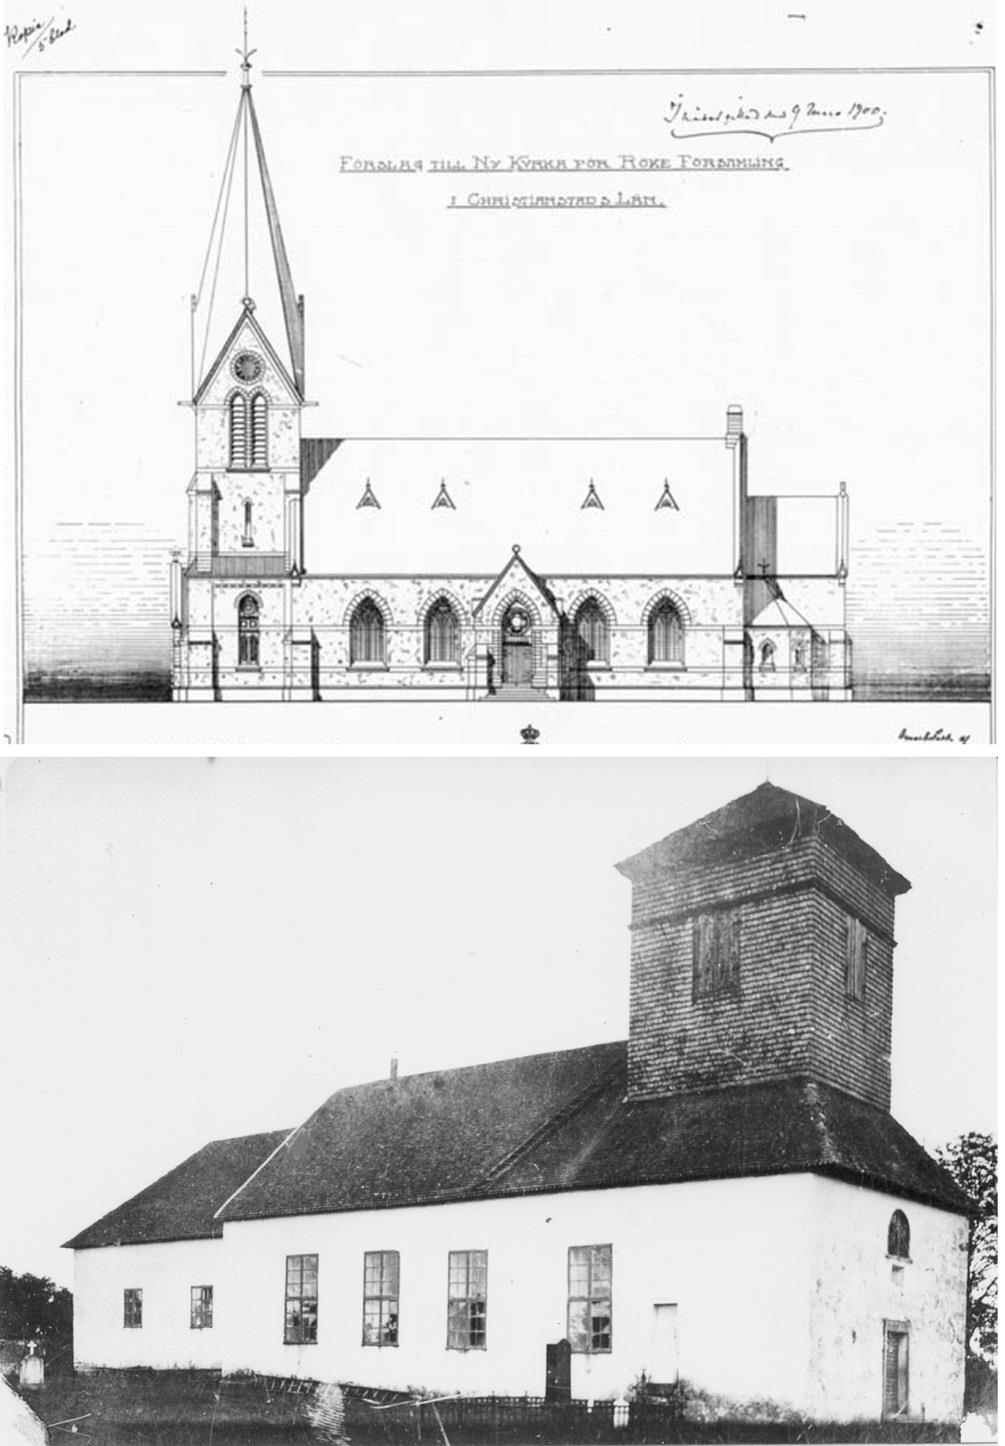 Historik i korthet Sent 1100-tal Den gamla kyrkan uppförs. 1816 Kyrkan byggs ut åt väster. Kyrkklockan från 1400-talet flyttas. 1833 Koret byggs ut. 1836-37 Kyrkogården utvidgas.